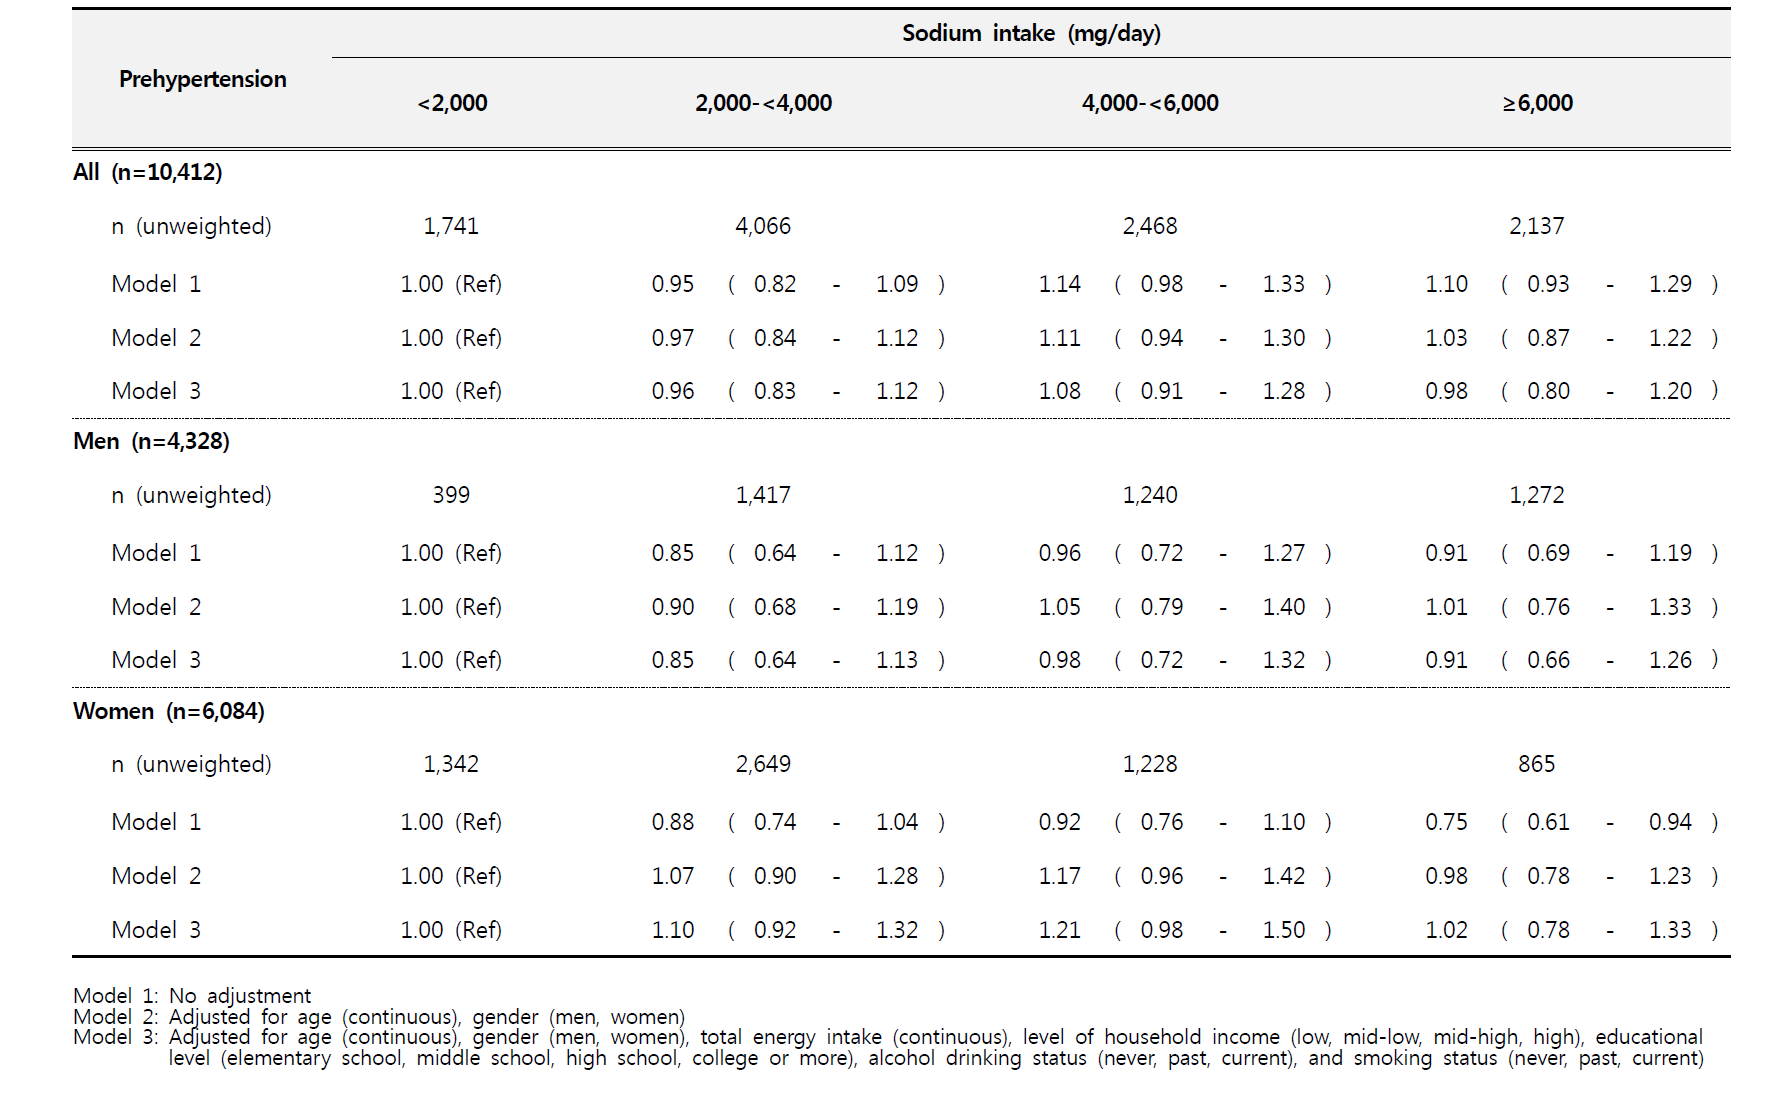 [국민건강영양조사] 나트륨 섭취량과 고혈압전단계 간의 상관성 분석: 오즈비(Odds ratio, ORs)